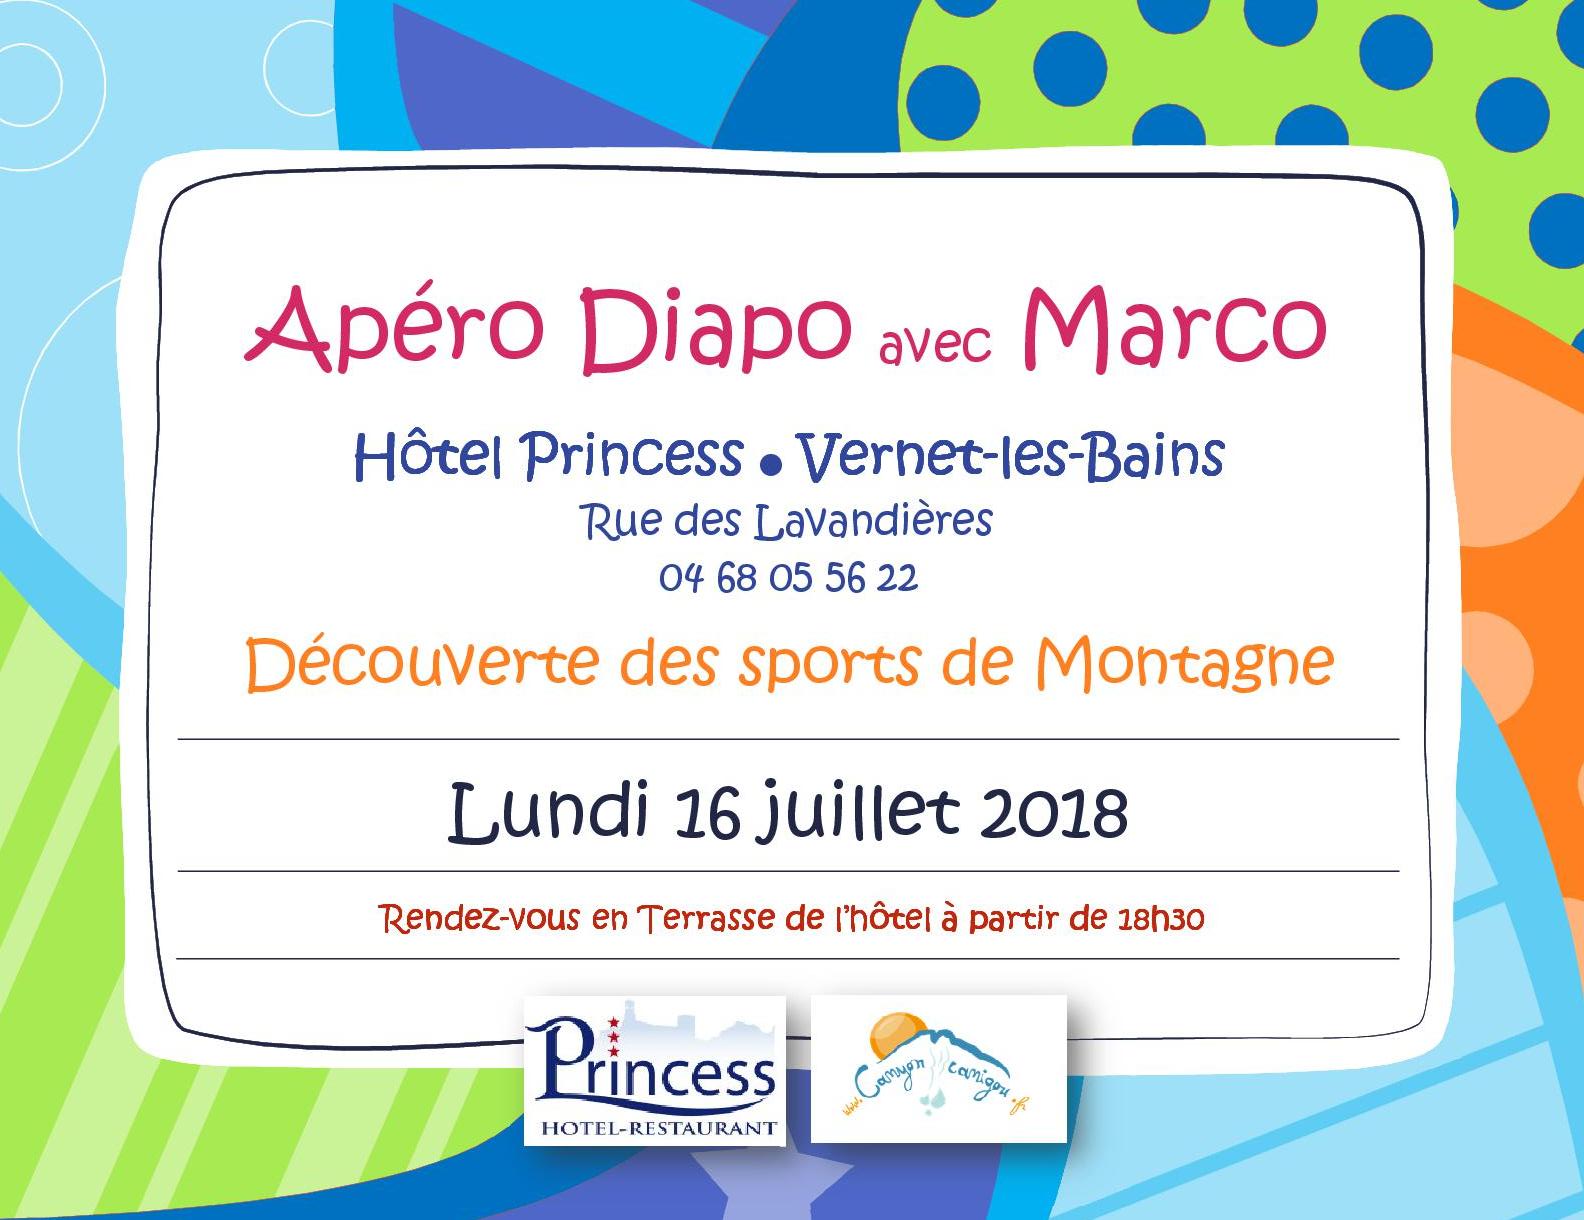 Apéro_Diapo_Hotel_Princess_Vernet-les-Bains